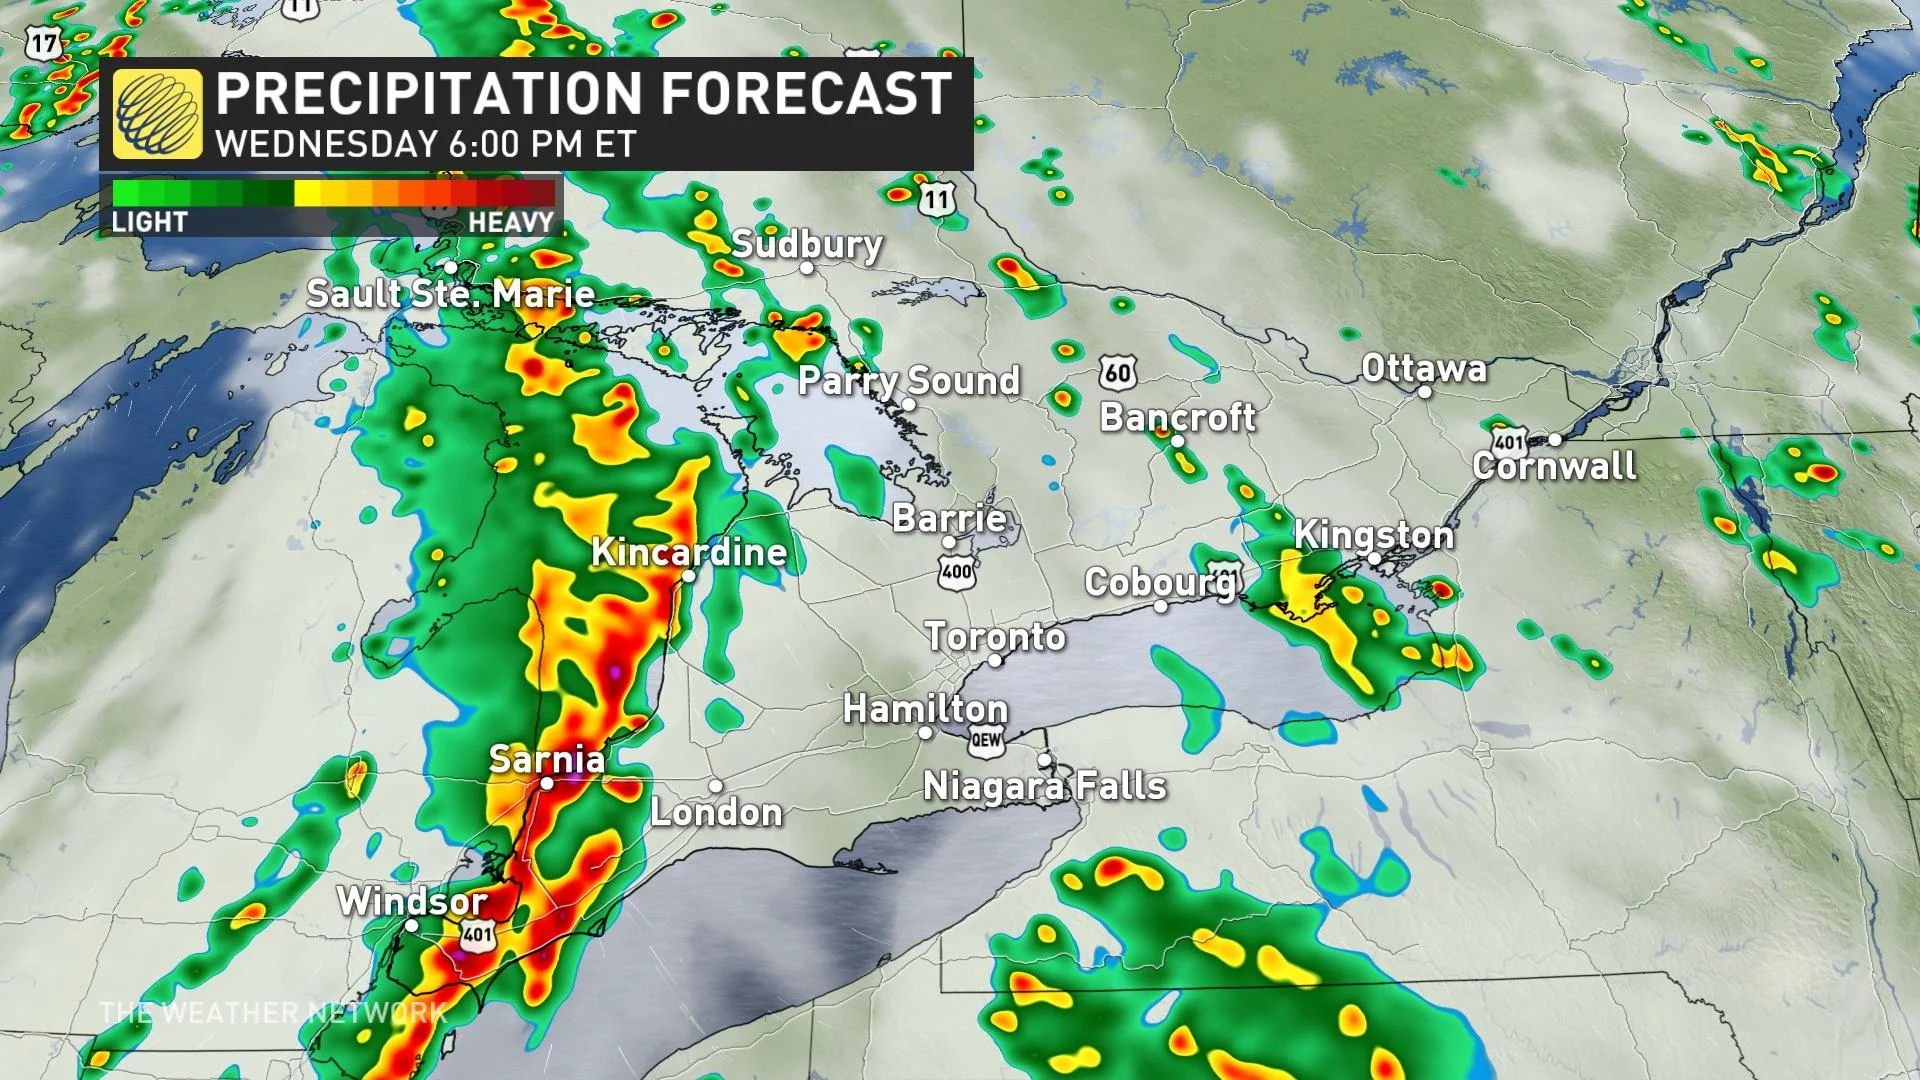 Ontario Wednesday 6 pm precipitation